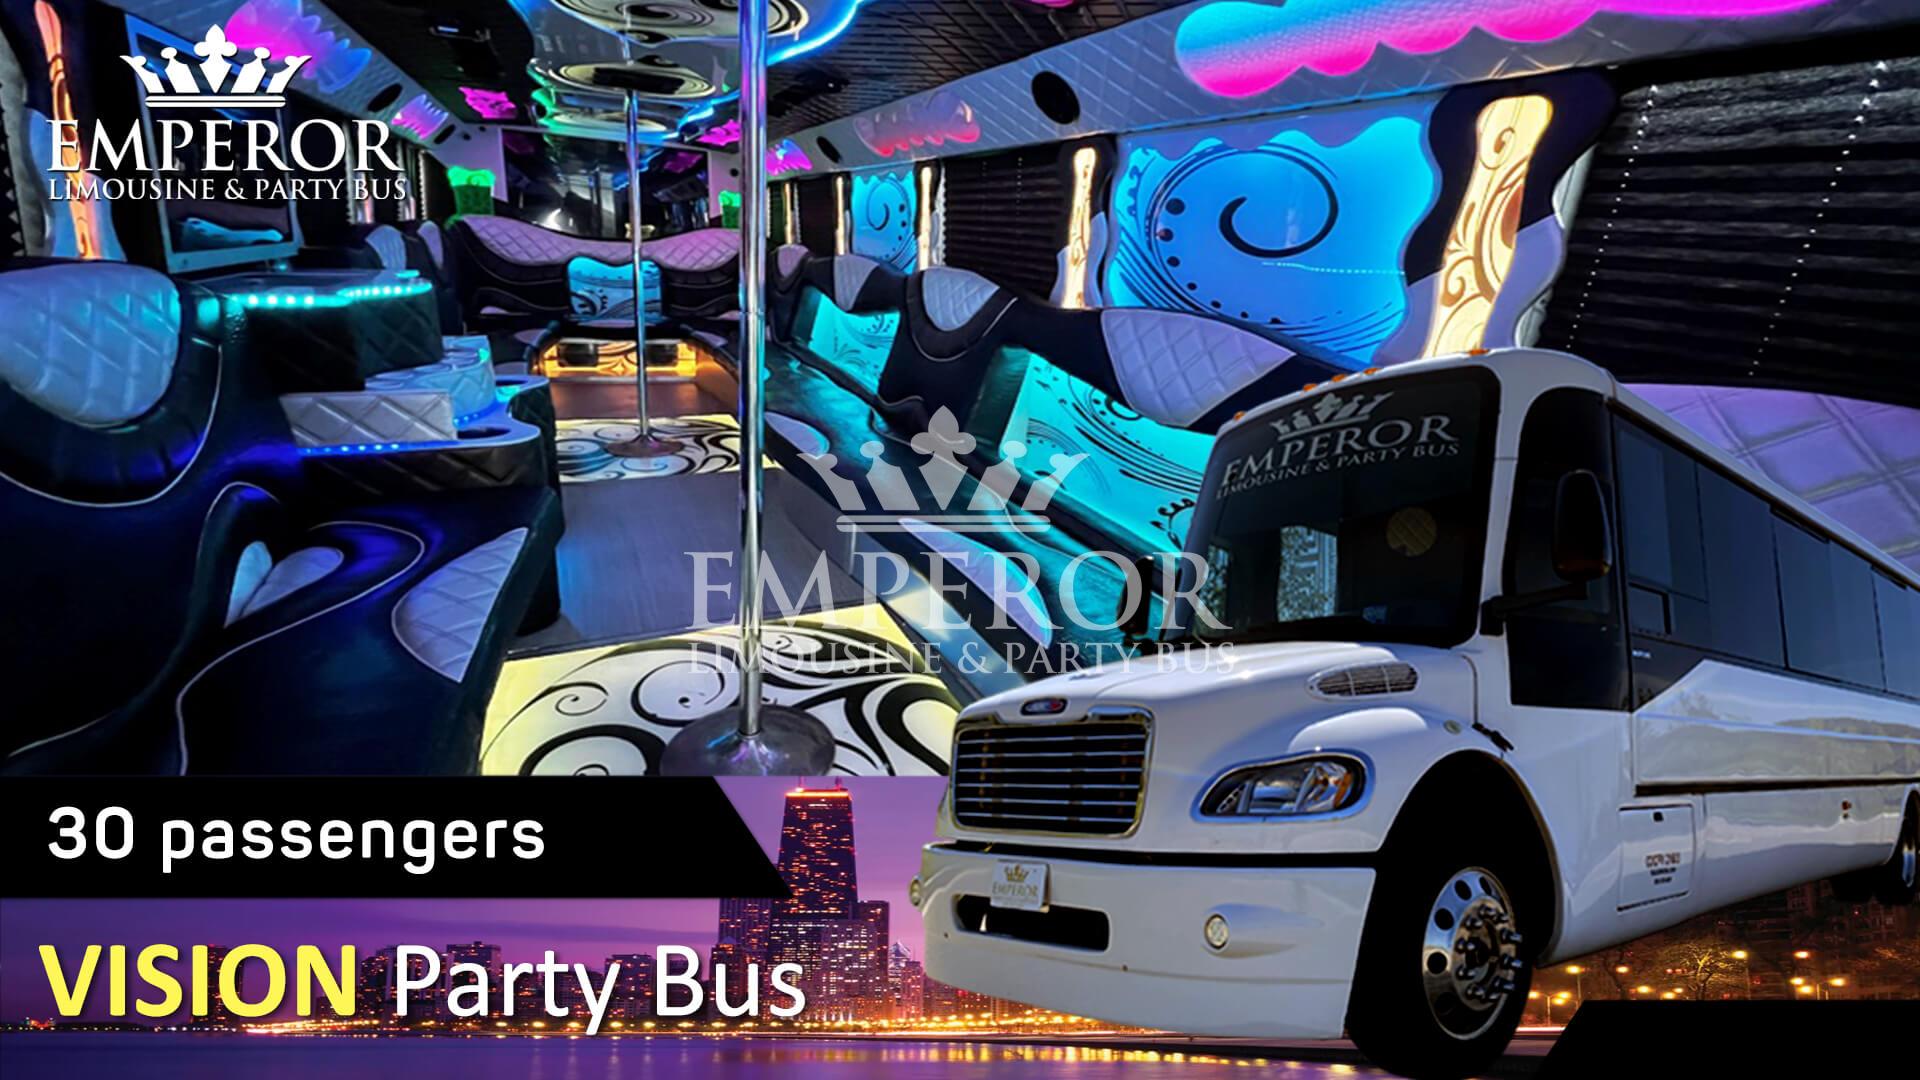 Algonquin party bus - Vision Edition